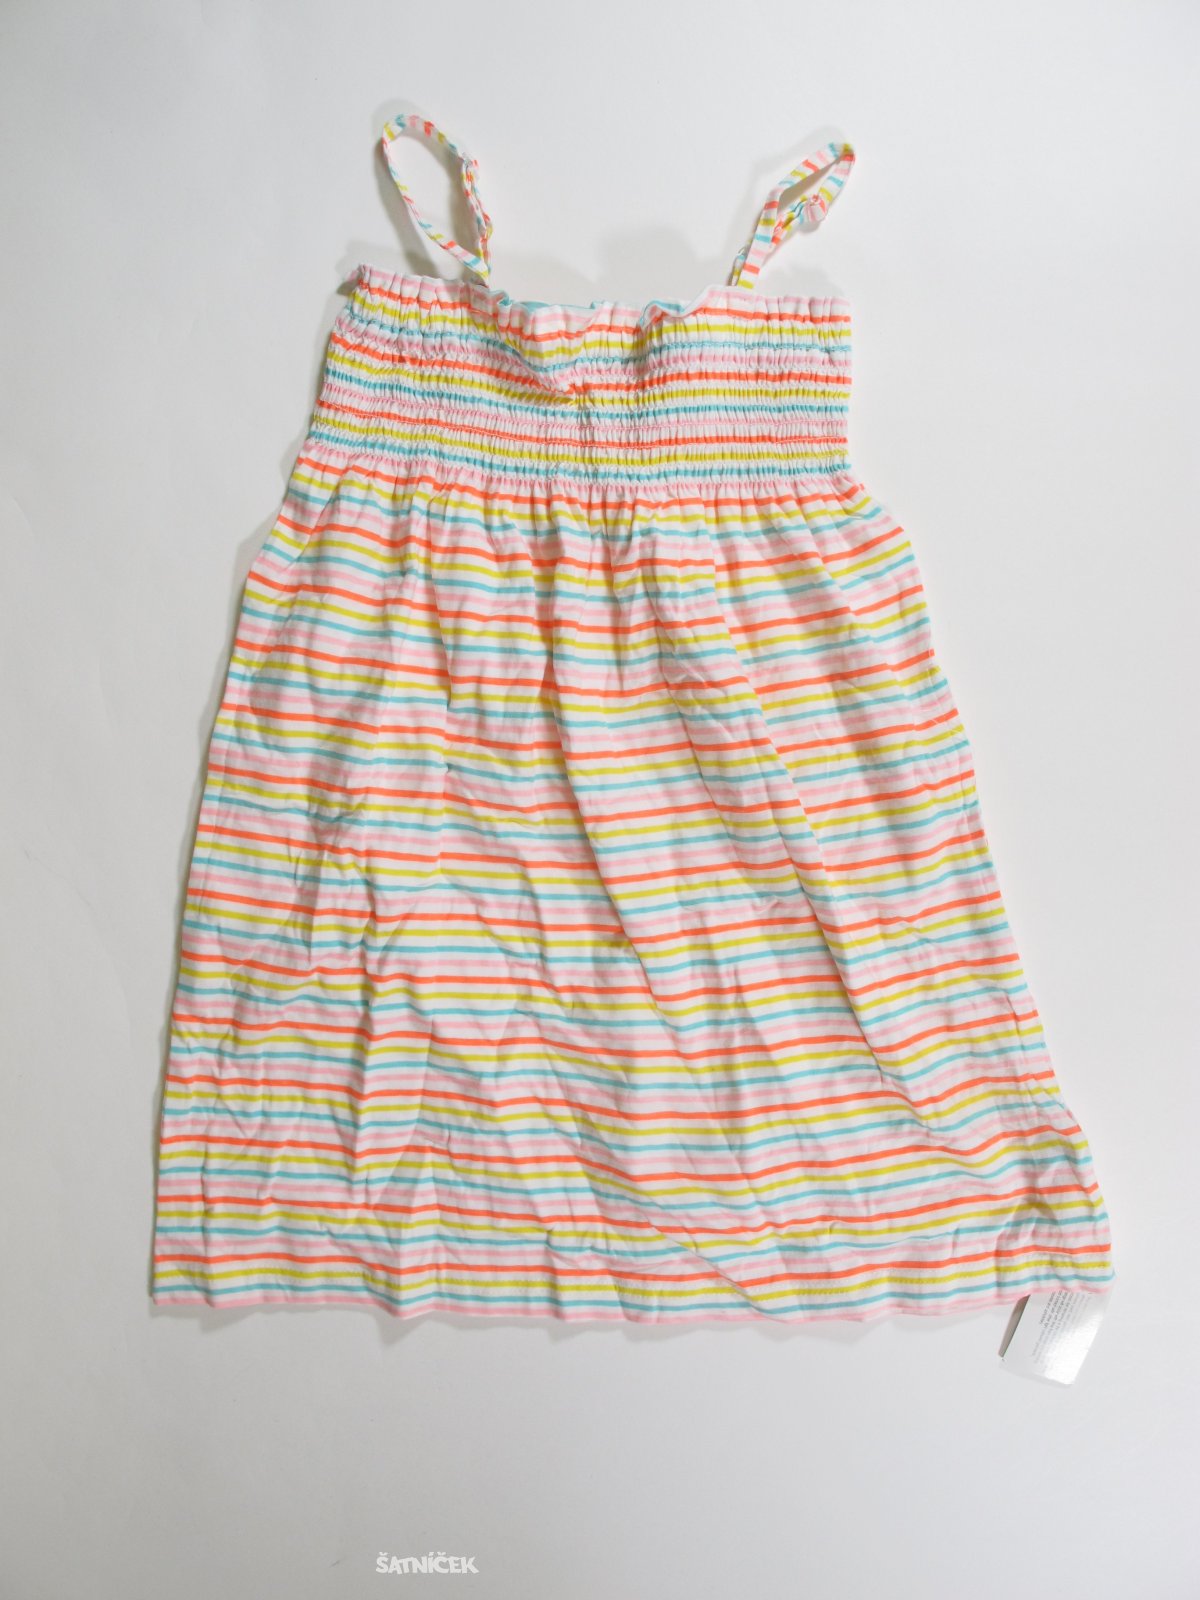 Šaty pro holky barevné outlet 